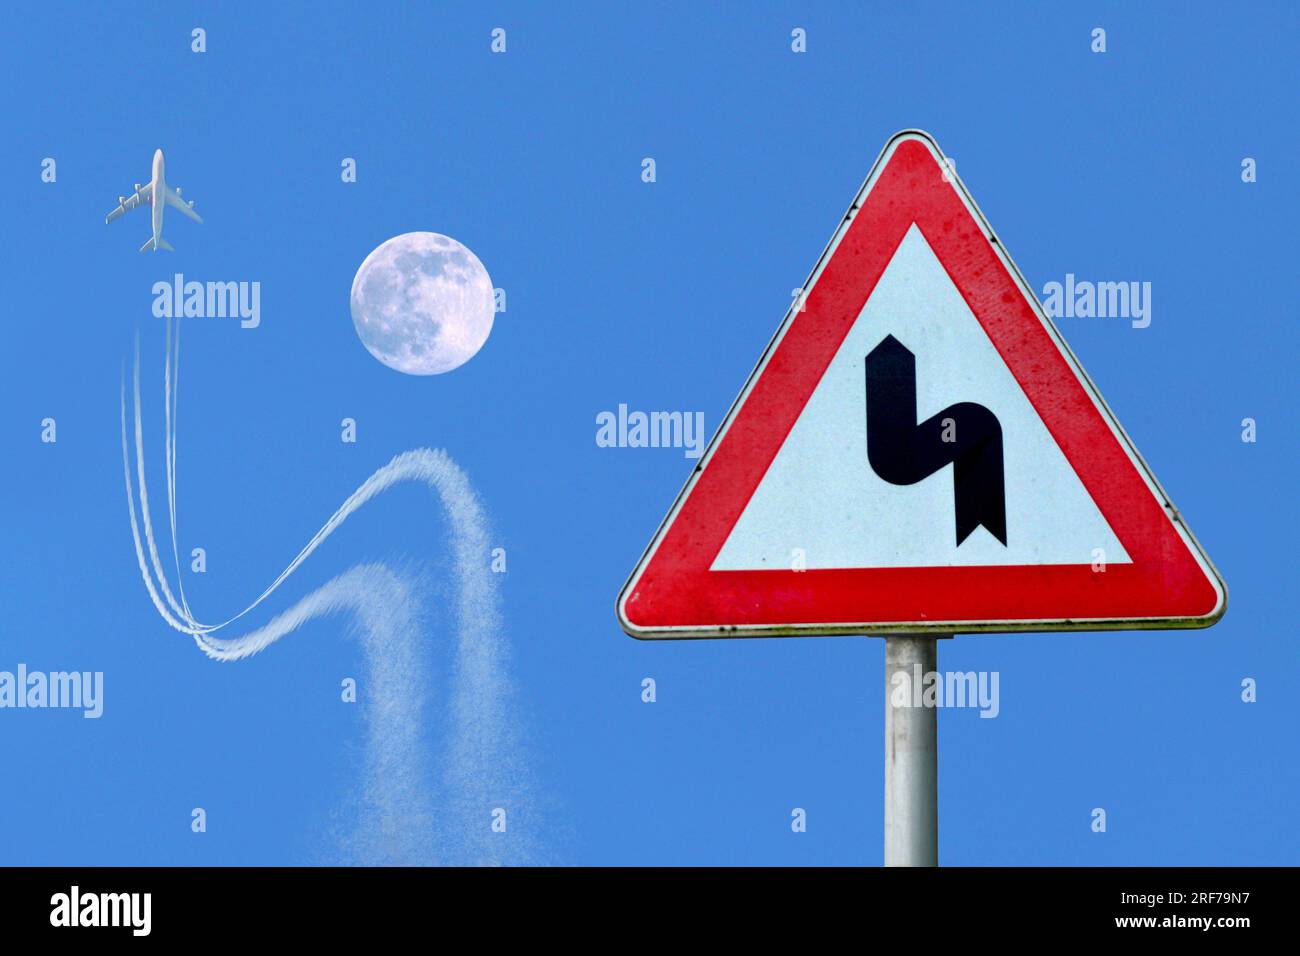 Flugzeug weicht einem Verkehrsschild entsprechend dem Mond aus, Deutschland | airplane obeying traffic sign, avoiding crash with a moon, Stock Photo